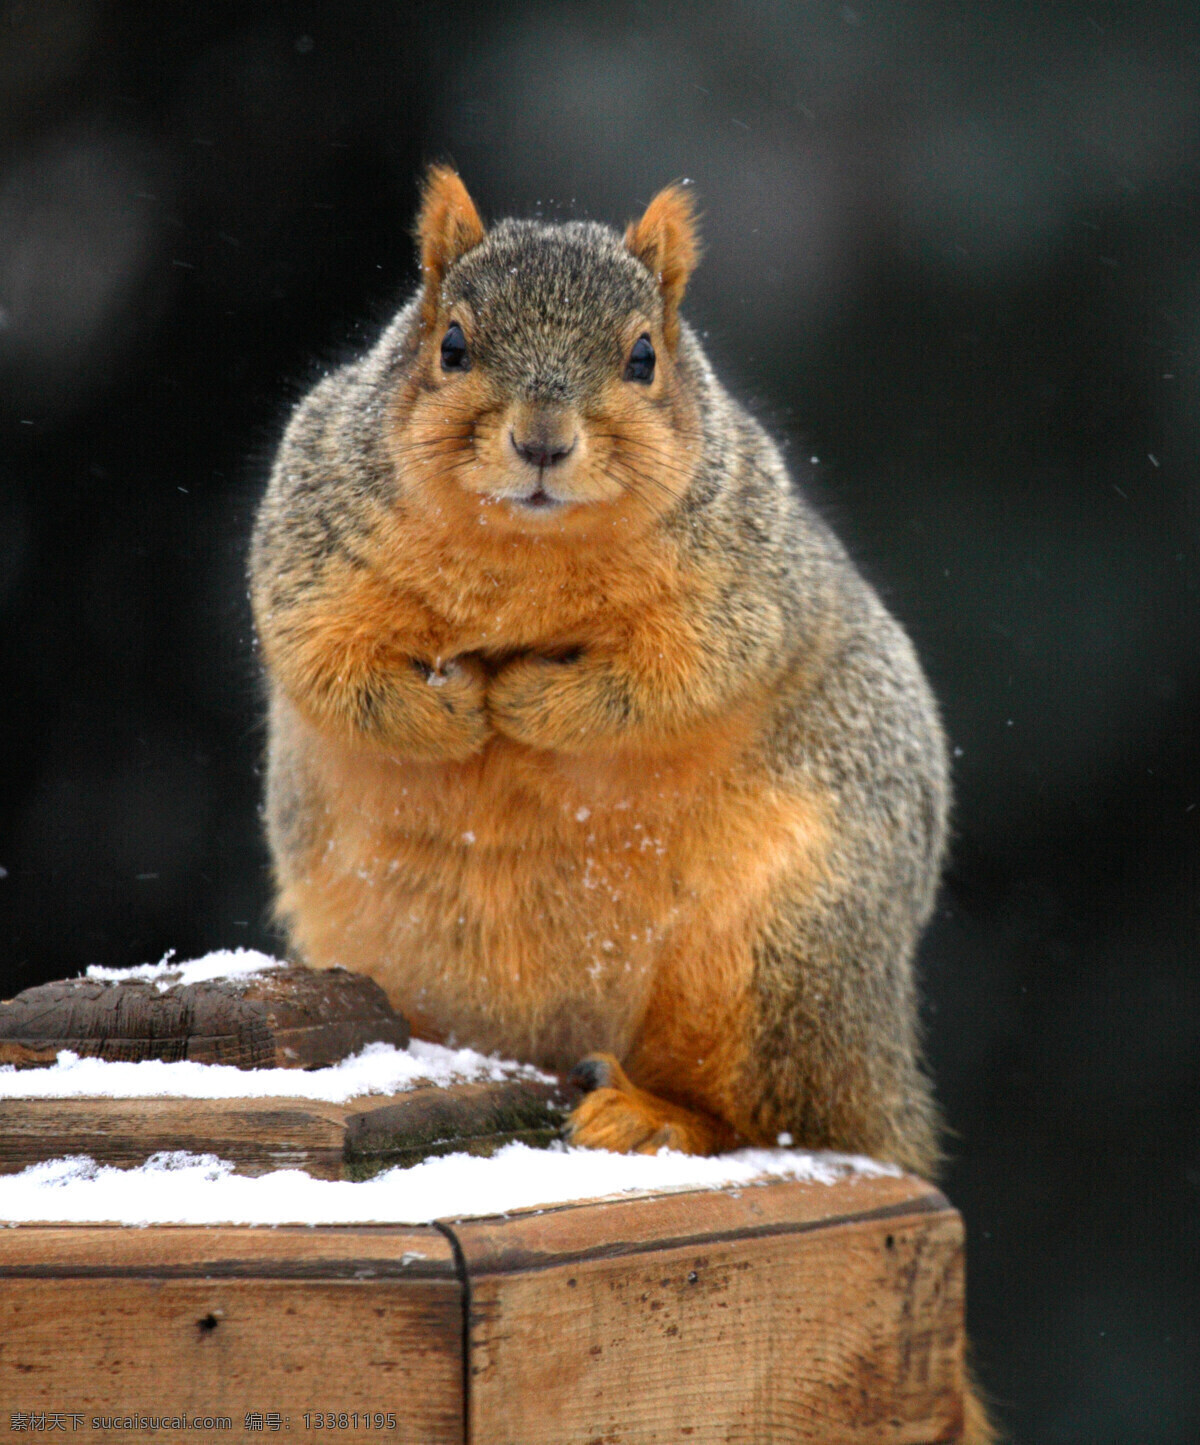 木桩 上 可爱 小 松鼠 鼠科 哺乳动物 动物世界 积雪 野生动物 摄影图片 高清图片 陆地动物 生物世界